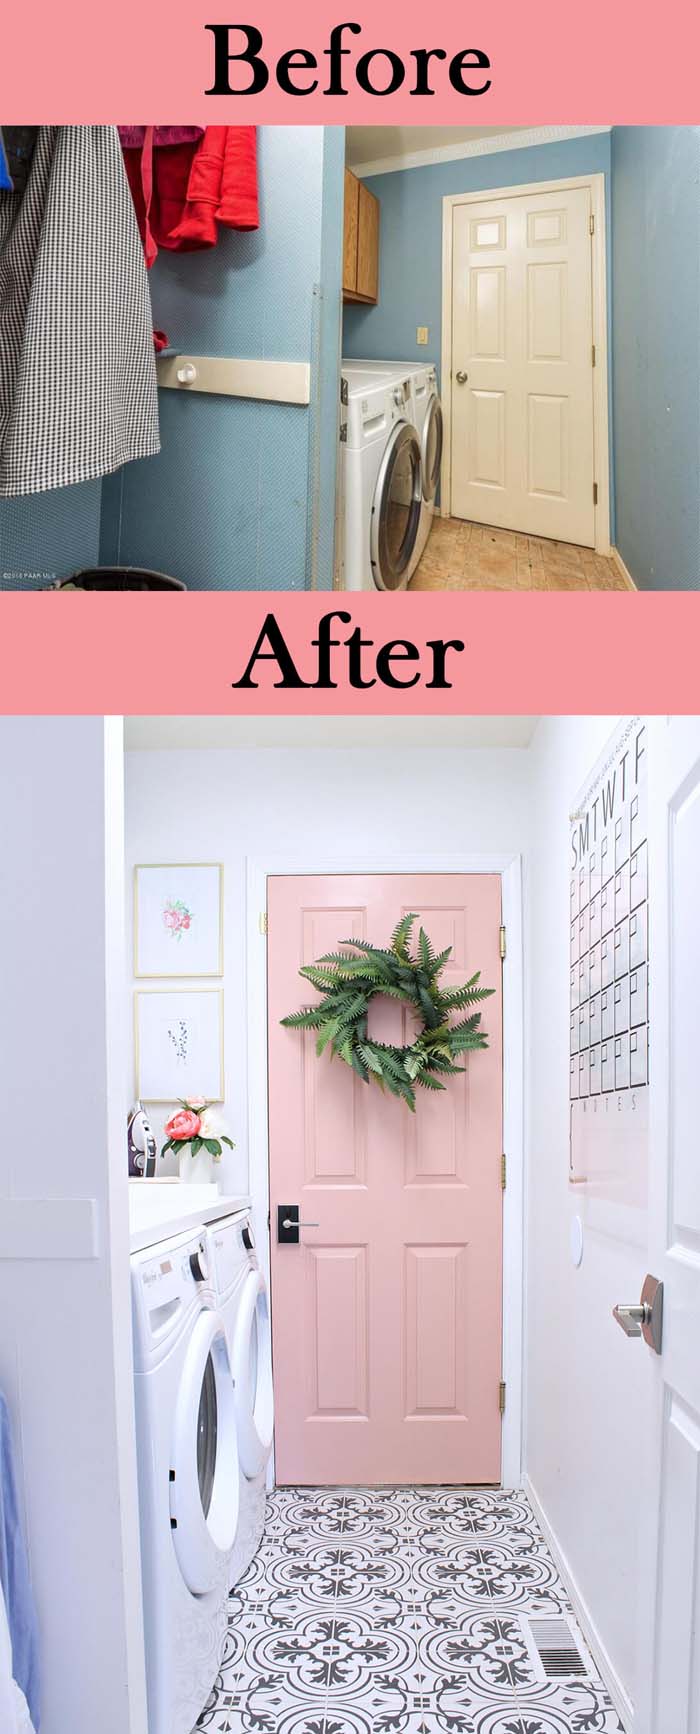 Updated Floor and Pretty in Pink Door #laundryroom #makeover #decorhomeideas